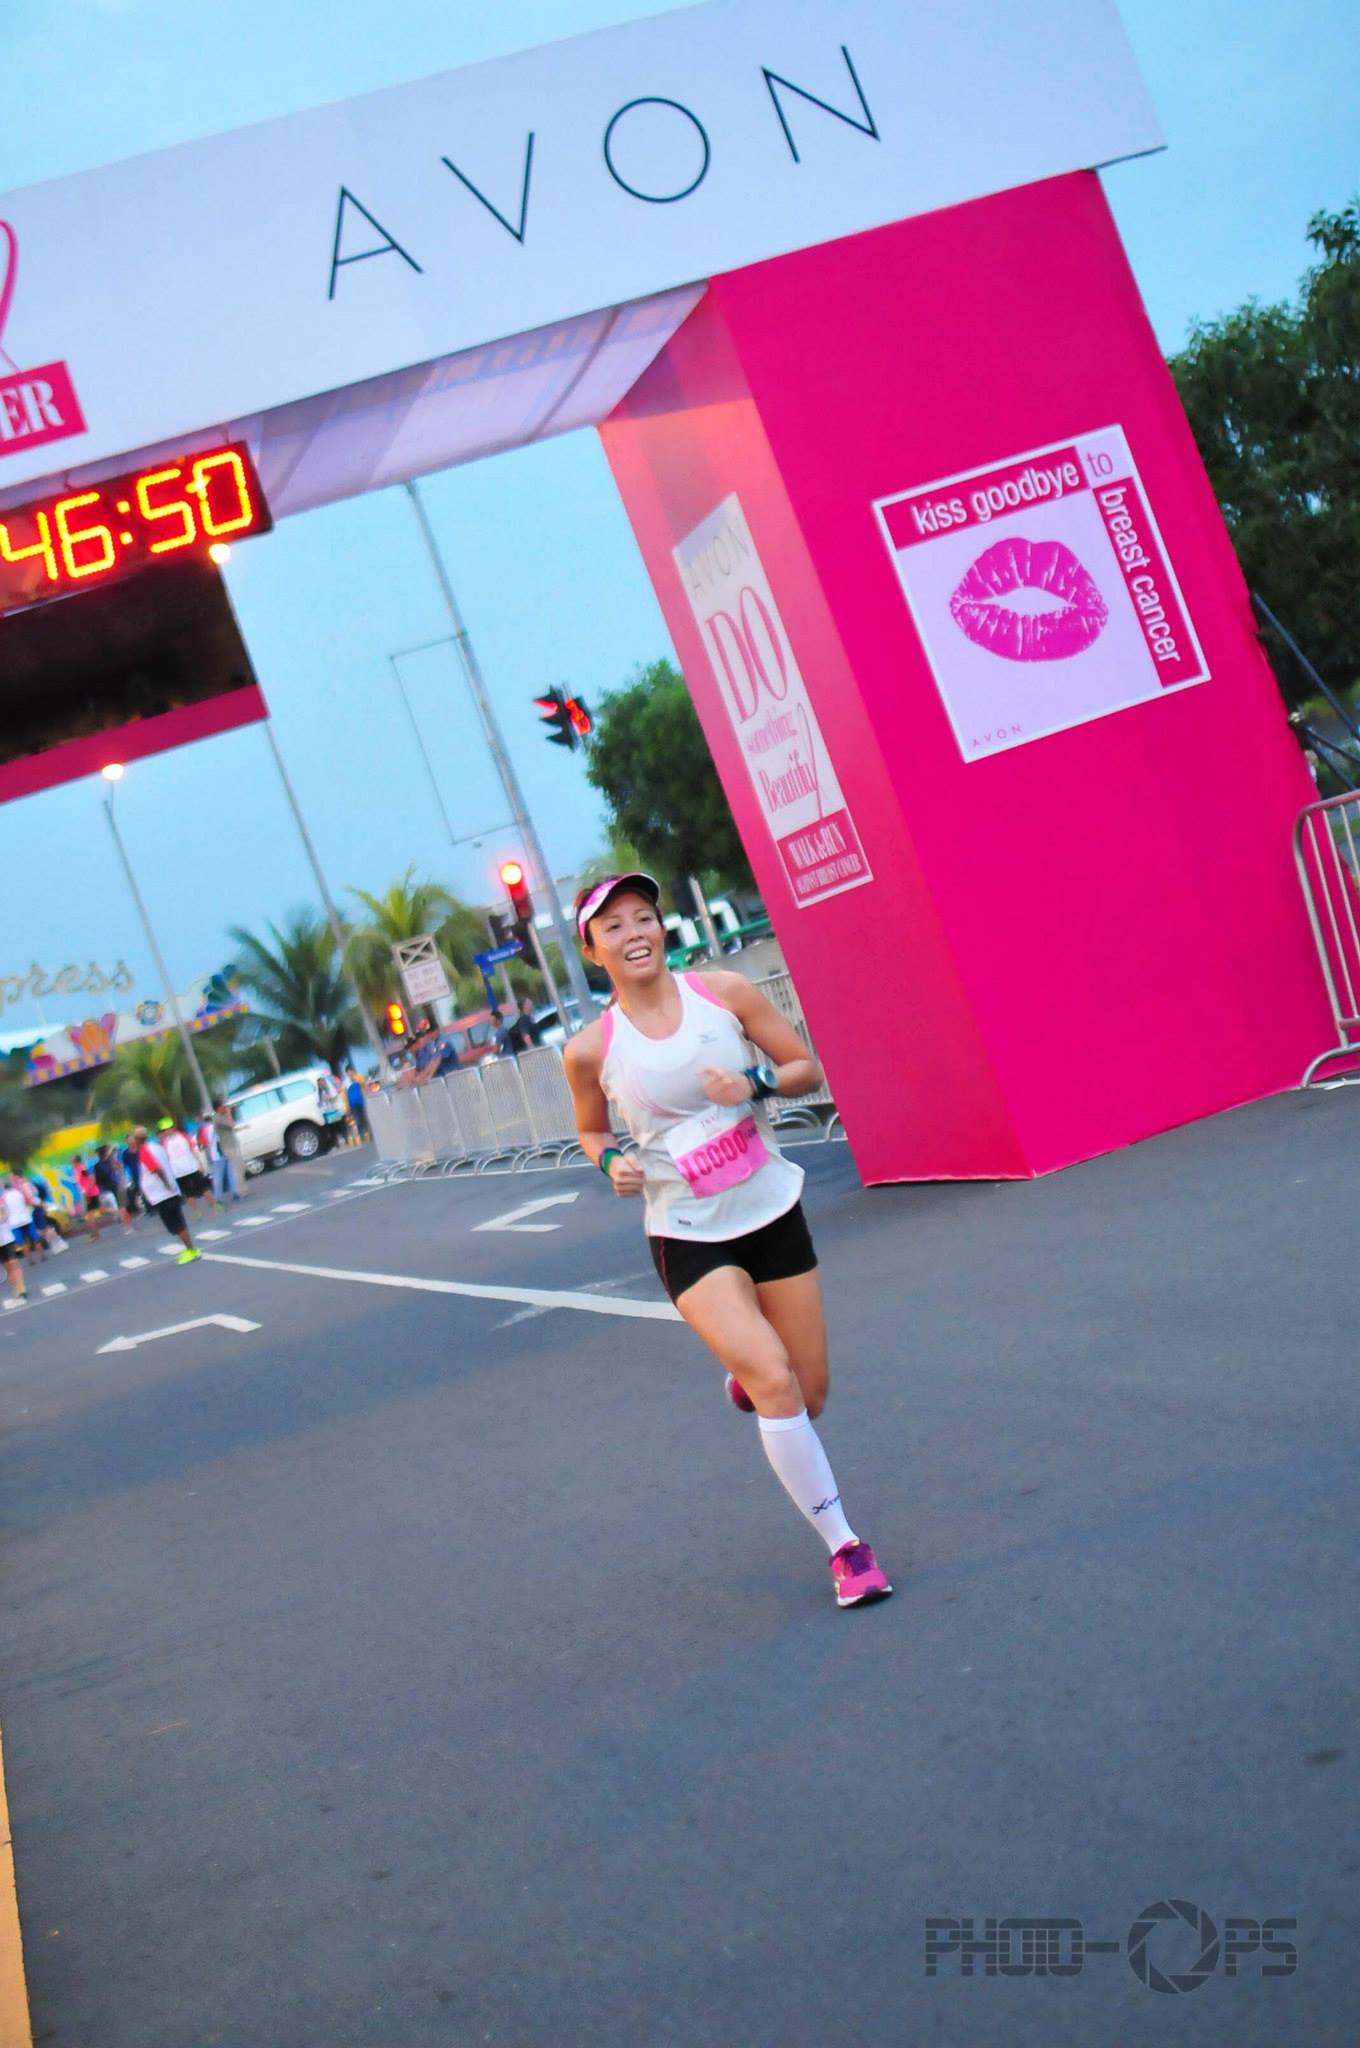 Avon Run Against Breast Cancer